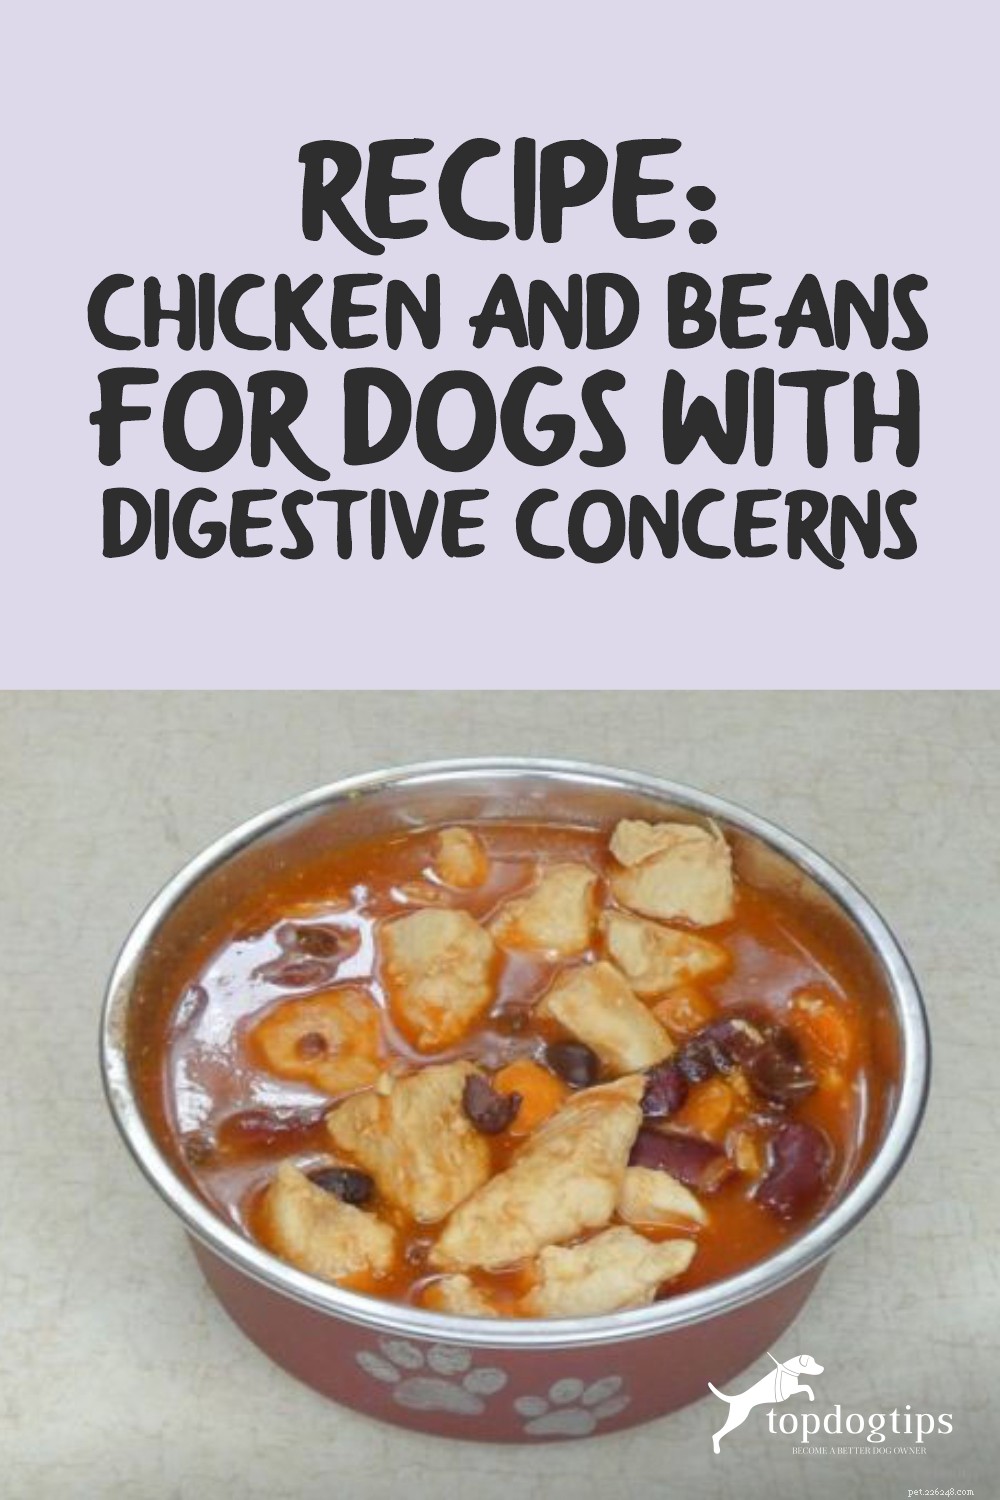 레시피:소화 문제가 있는 개를 위한 닭고기와 콩